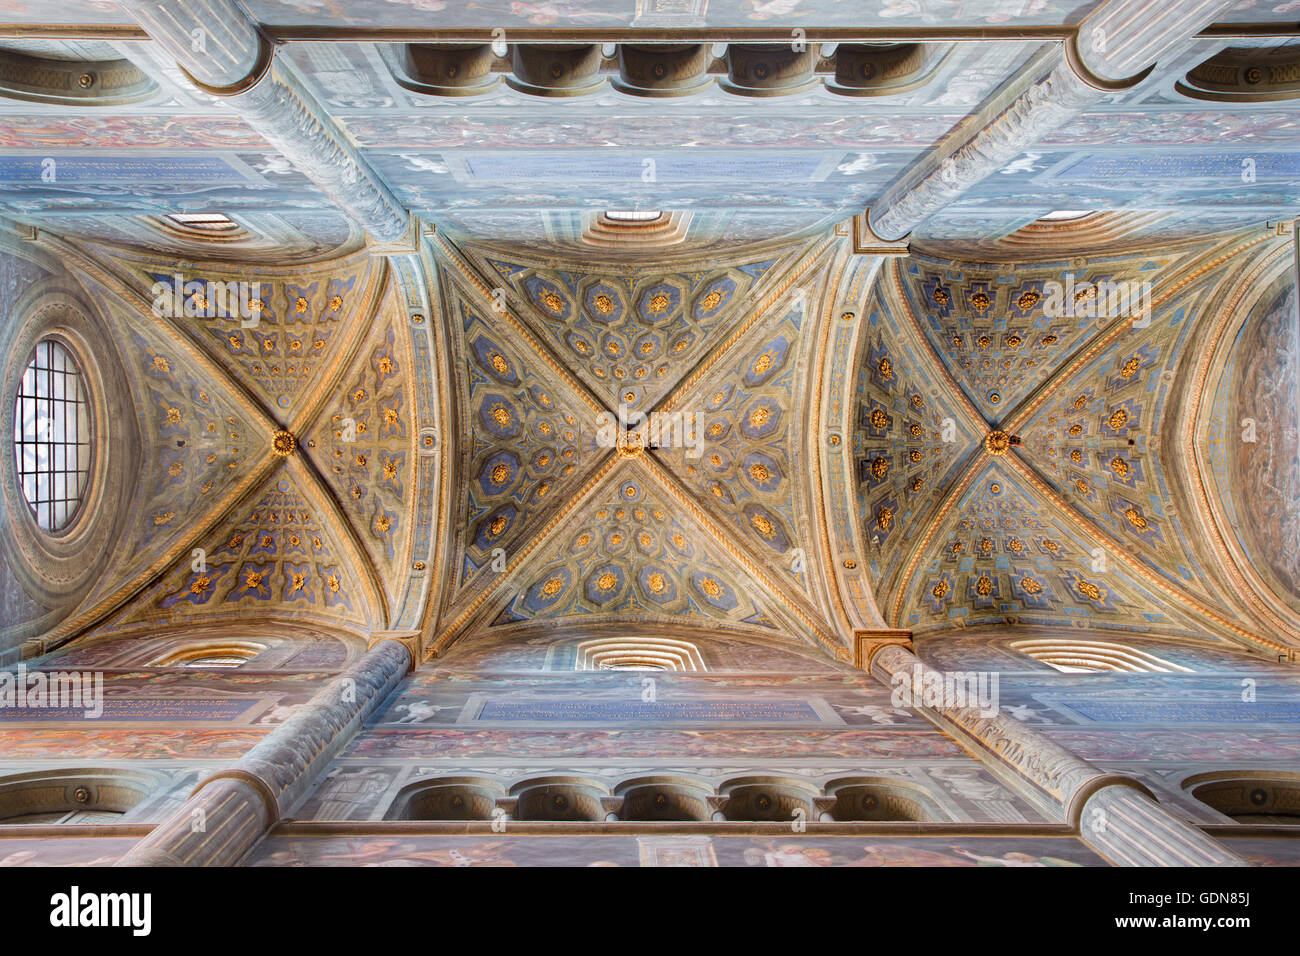 CREMONA, Italien - 25. Mai 2016: Das gotische Gewölbe der Kathedrale. Stockfoto